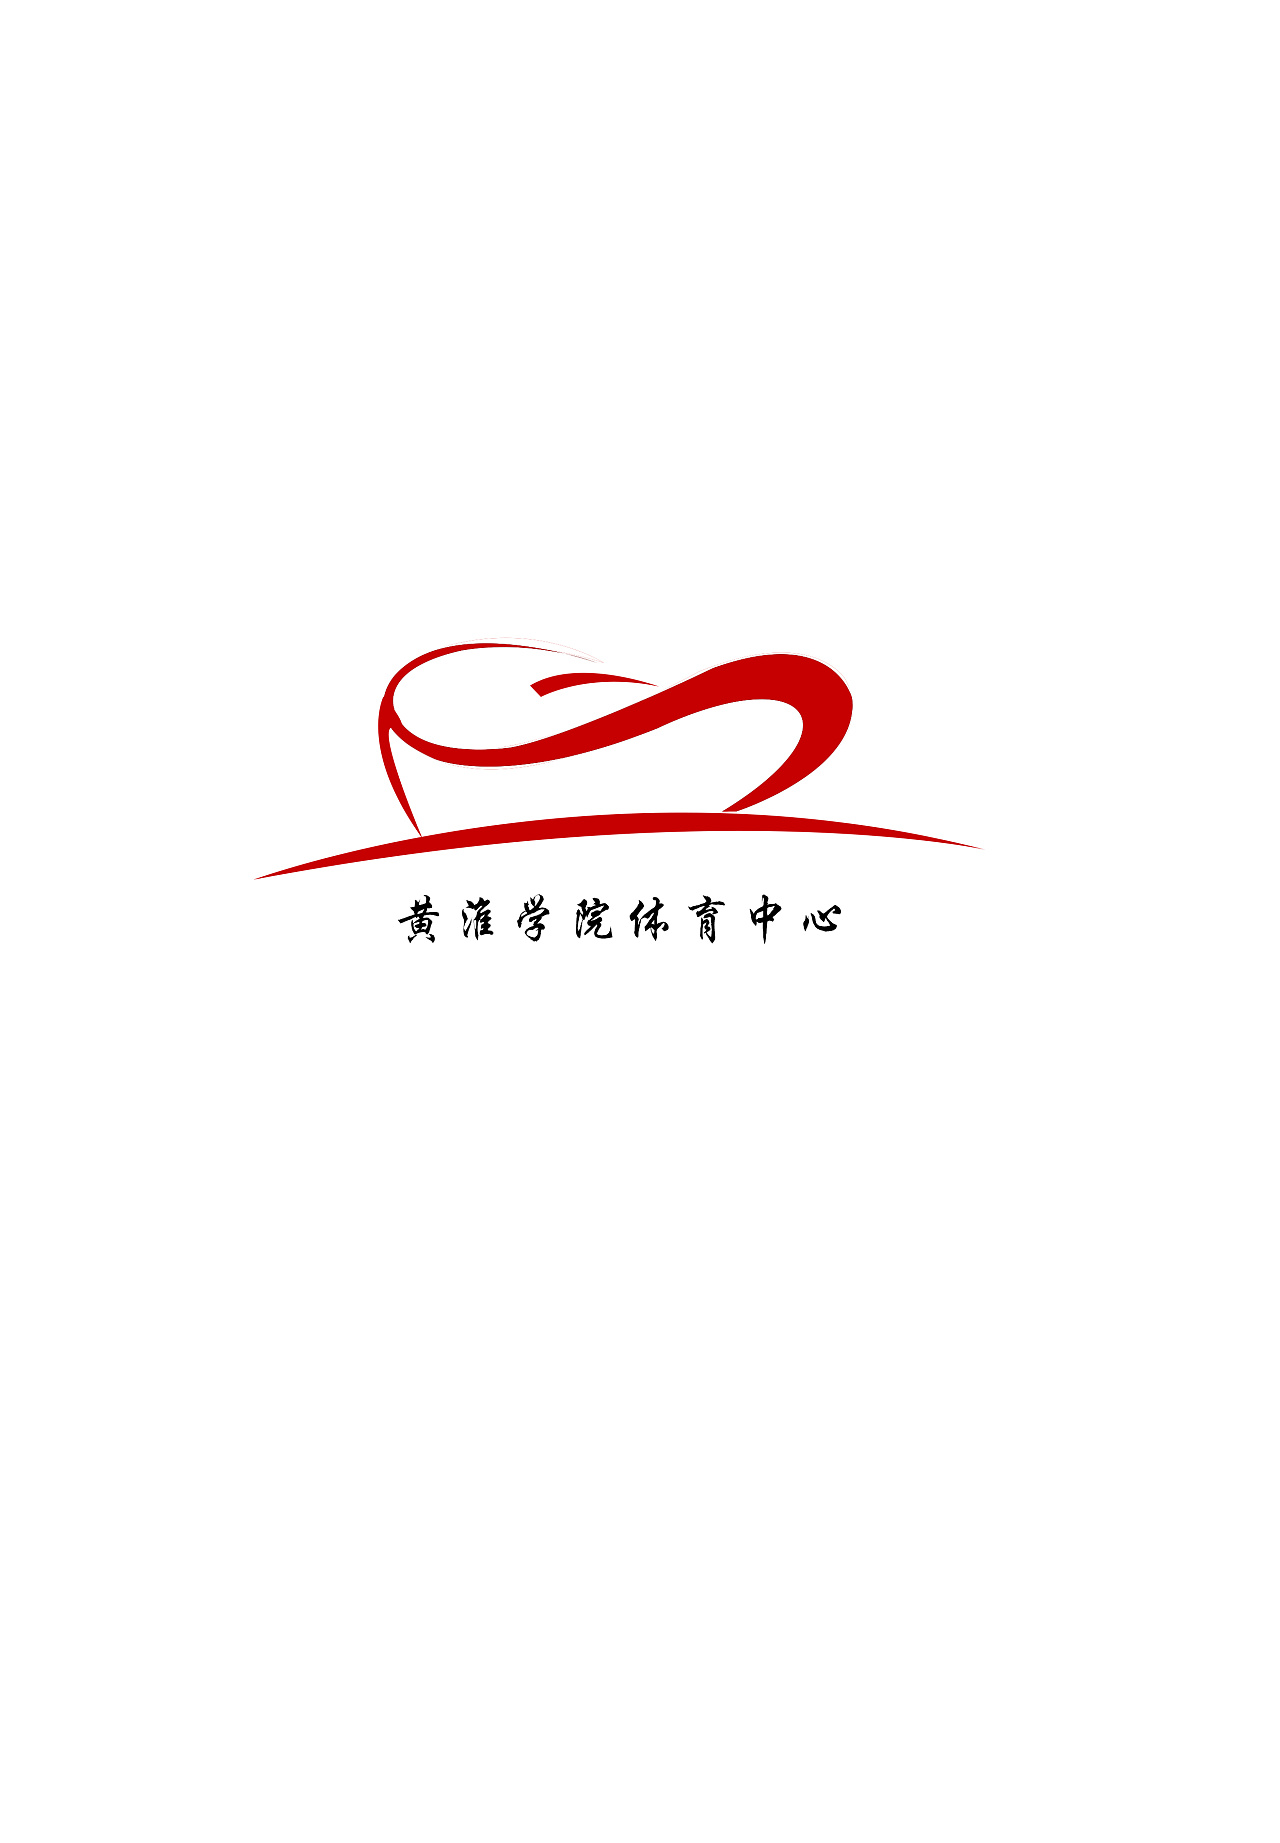 驻马店体育馆logo设计